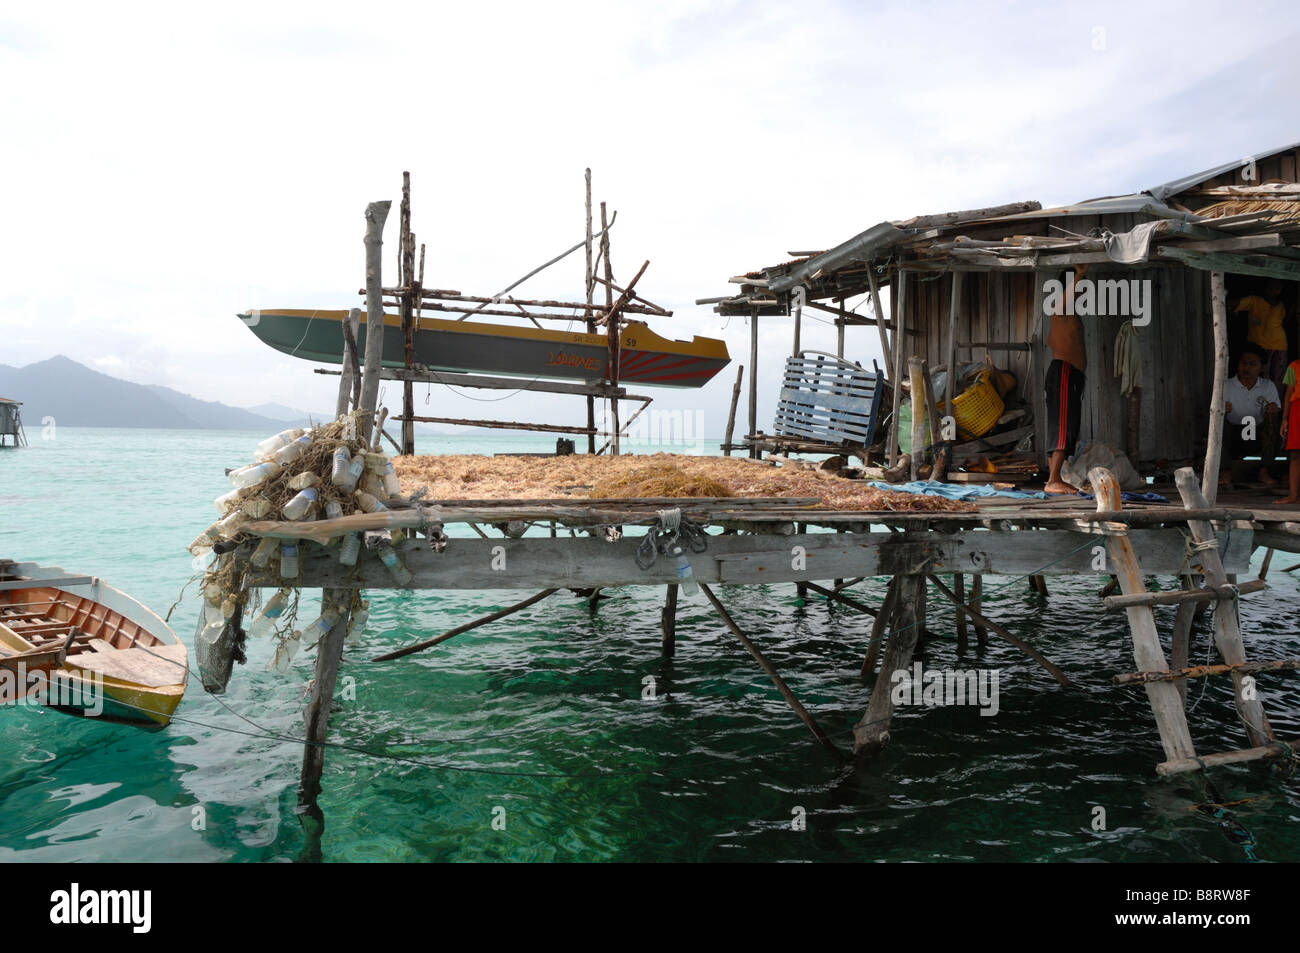 Alghe di asciugatura sulla piattaforma di casa Semporna Sulu Malesia Mare del Sud-est asiatico Foto Stock